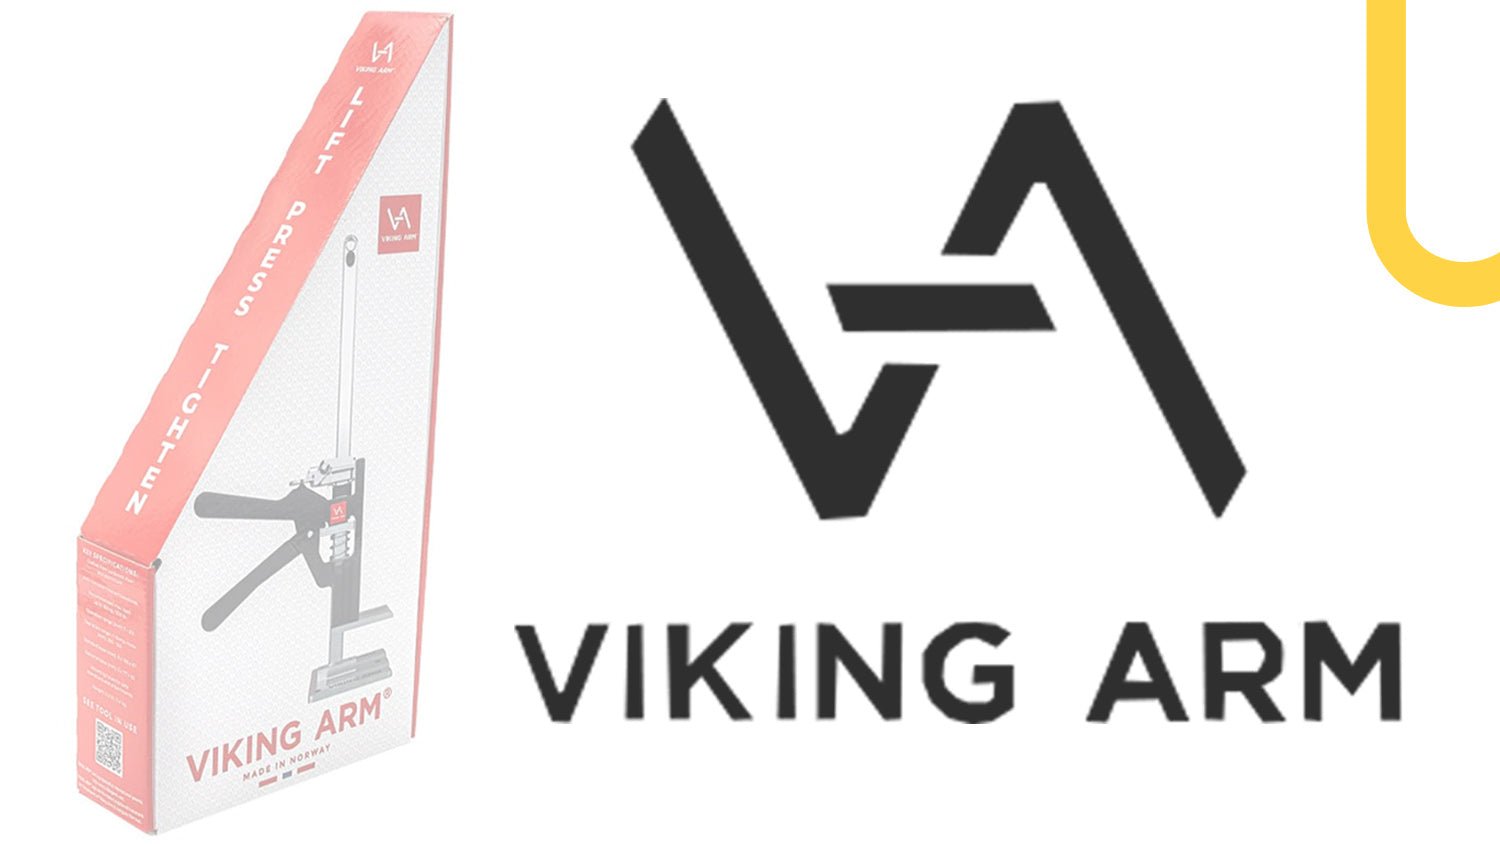 Meet The... Brand : Viking Arm - TF Tools Ltd